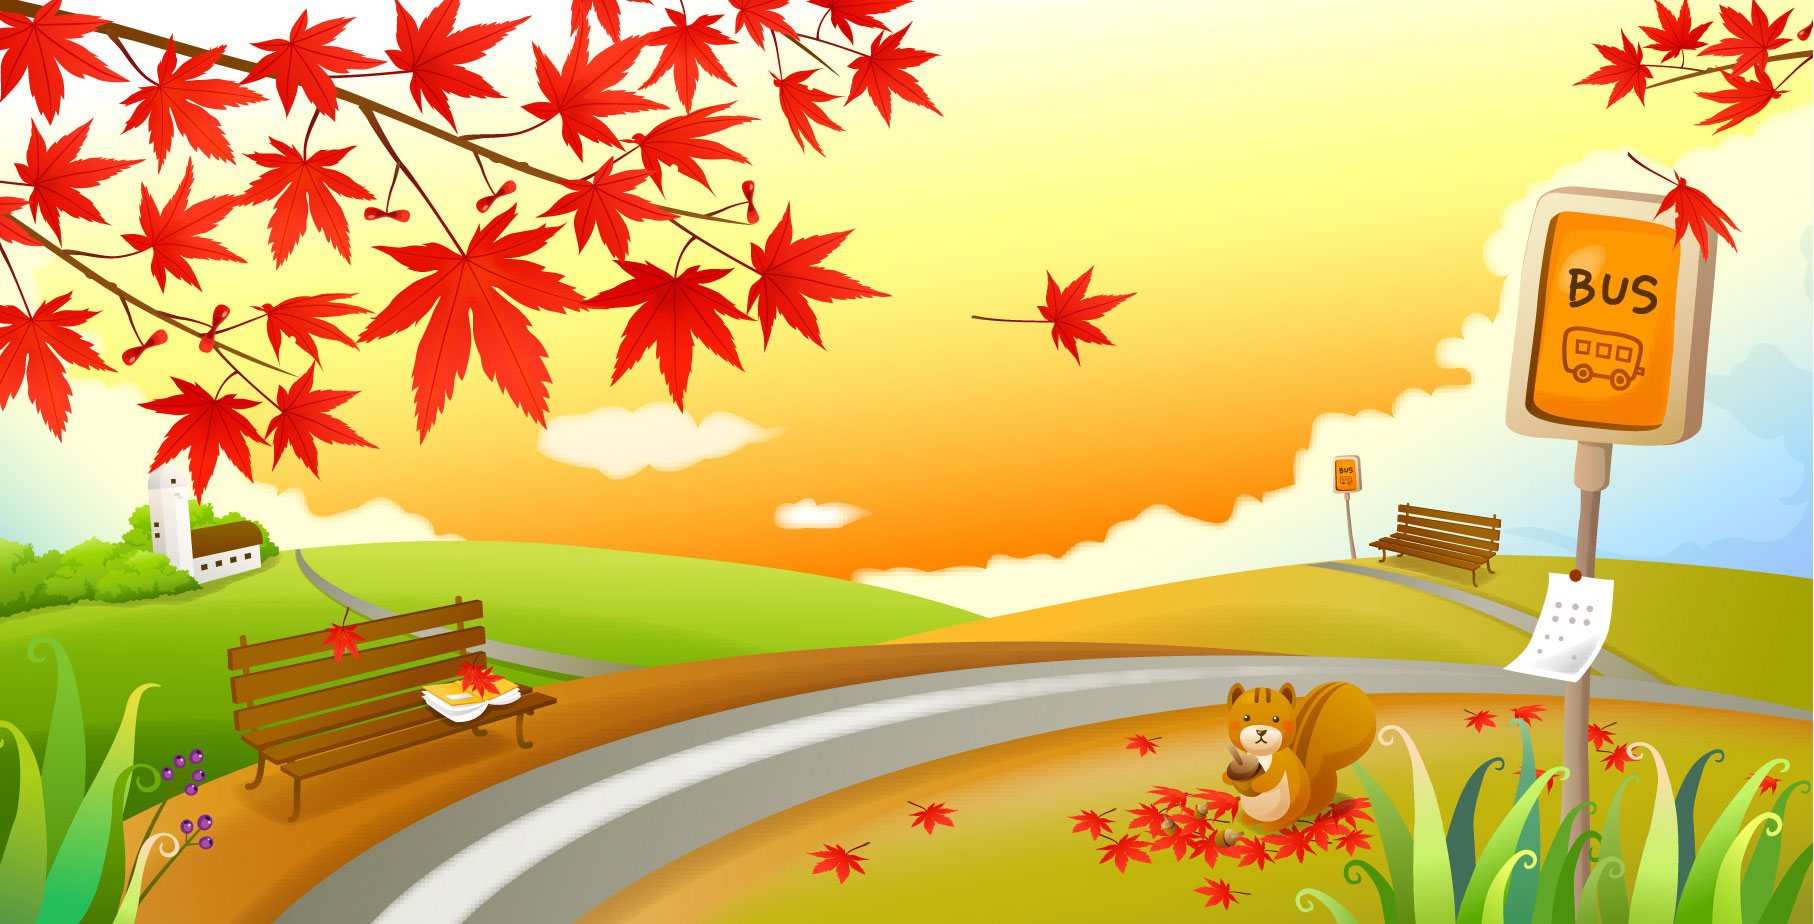 秋のイラストno 281 もみじのバス停 無料のフリー素材集 花鳥風月